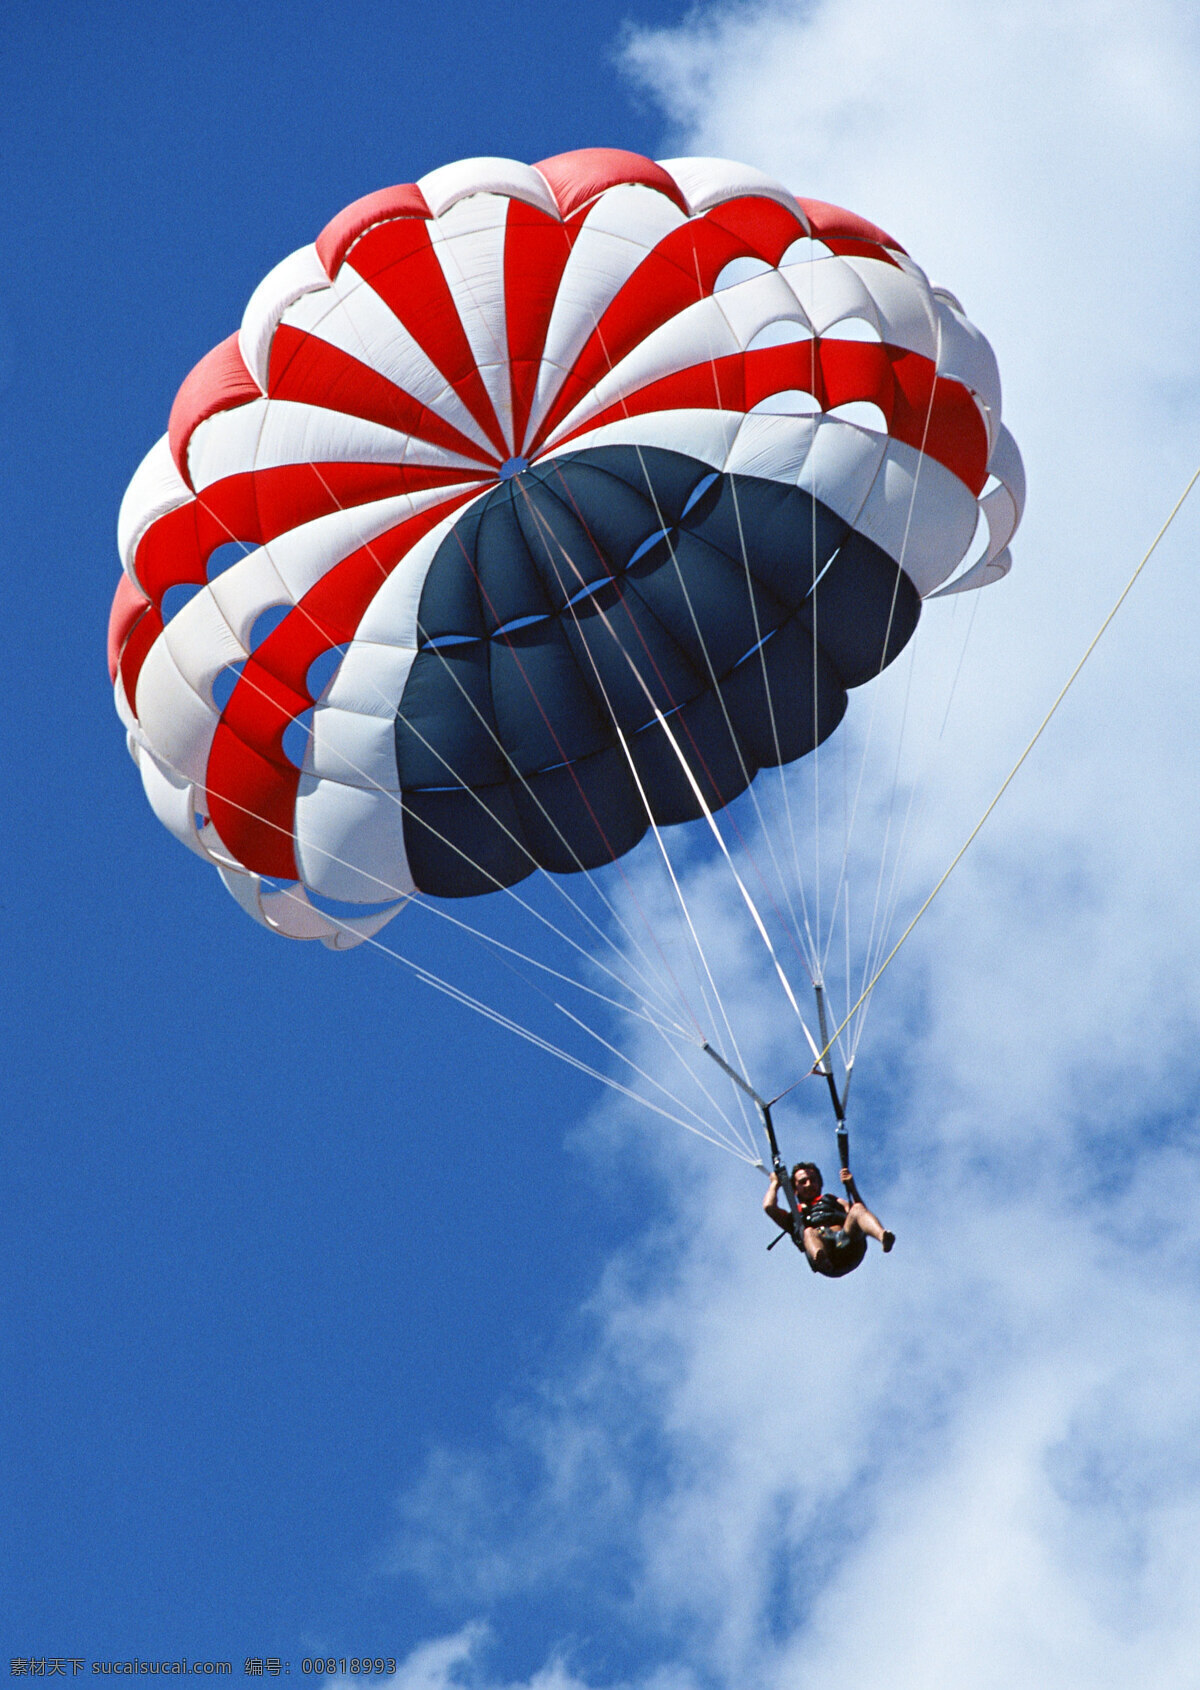 降落伞 跳伞 体育运动 蓝天 白云 文体艺术 生活百科 体育用品